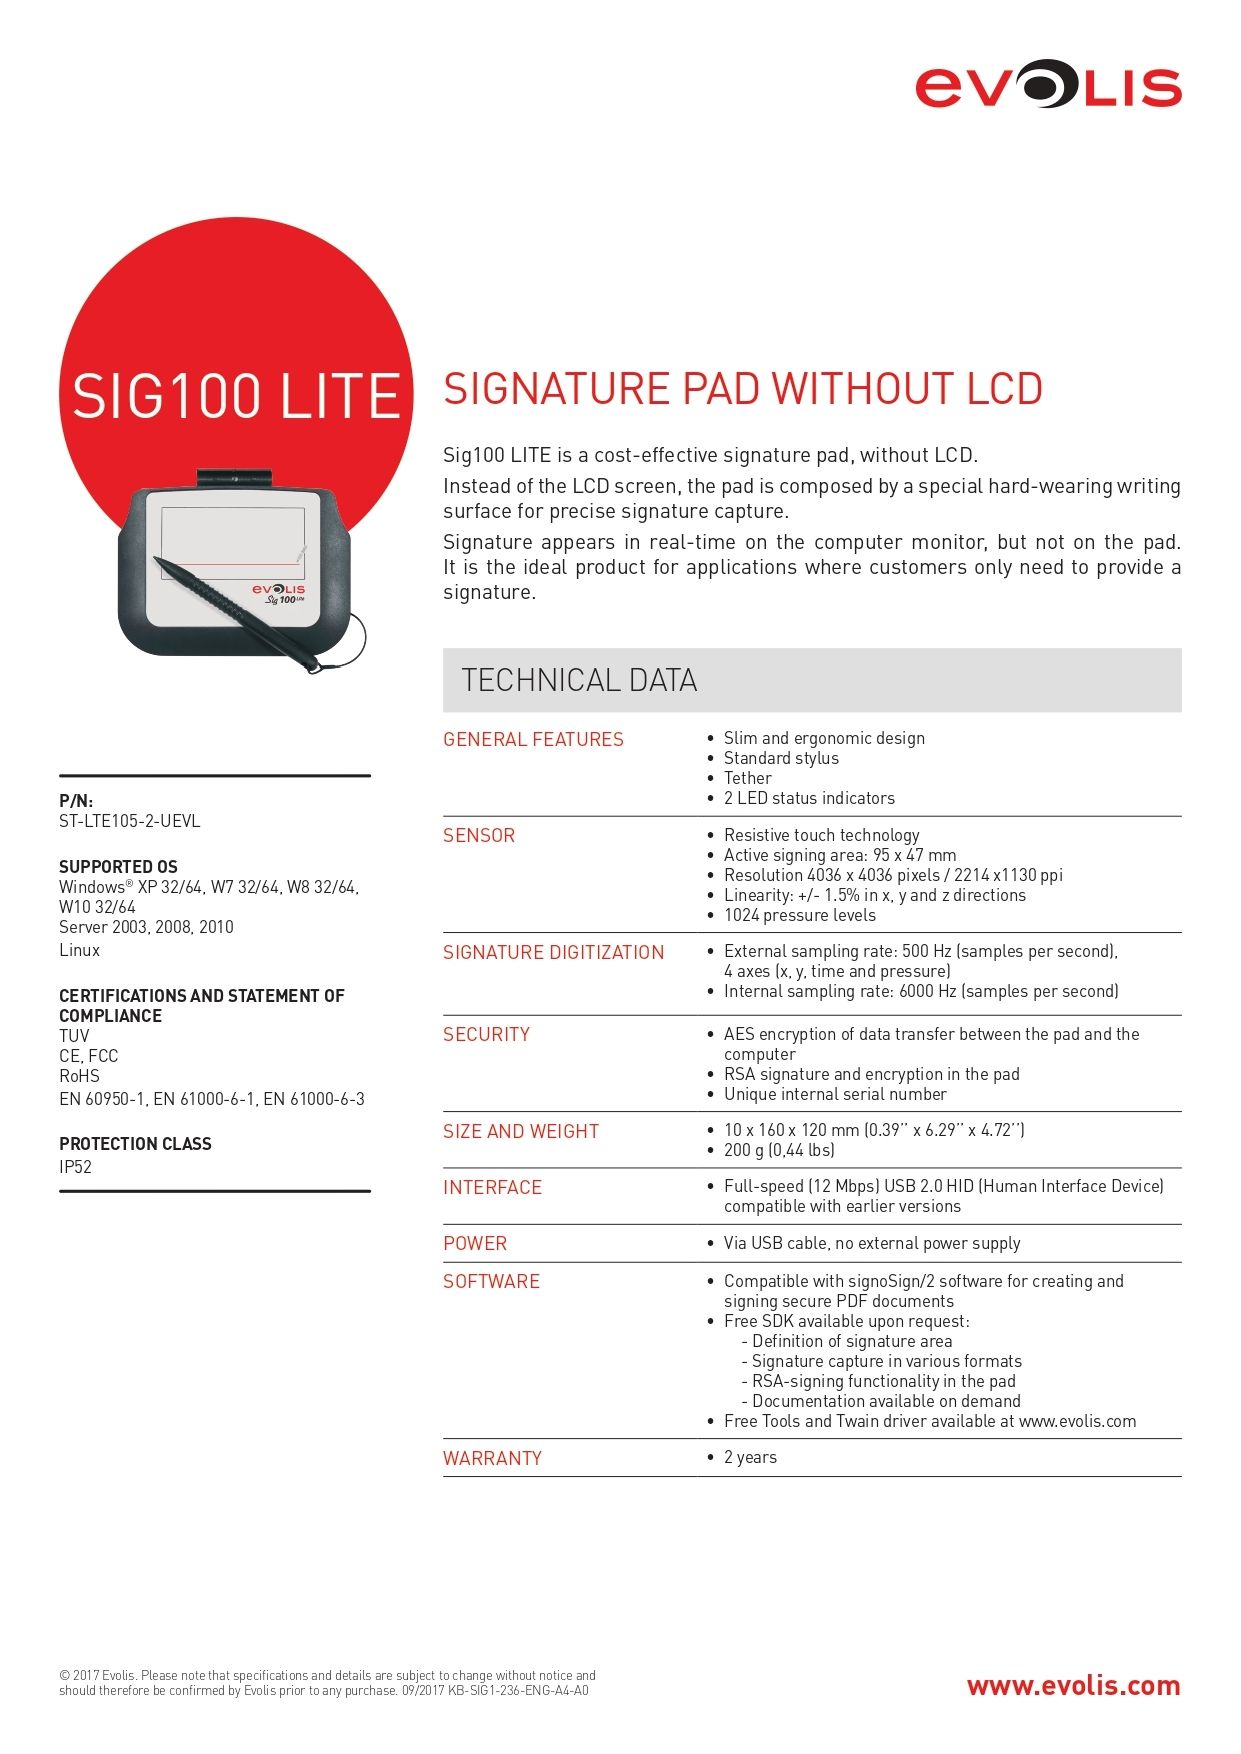 SIG100 LITE: Economic Signature Pad